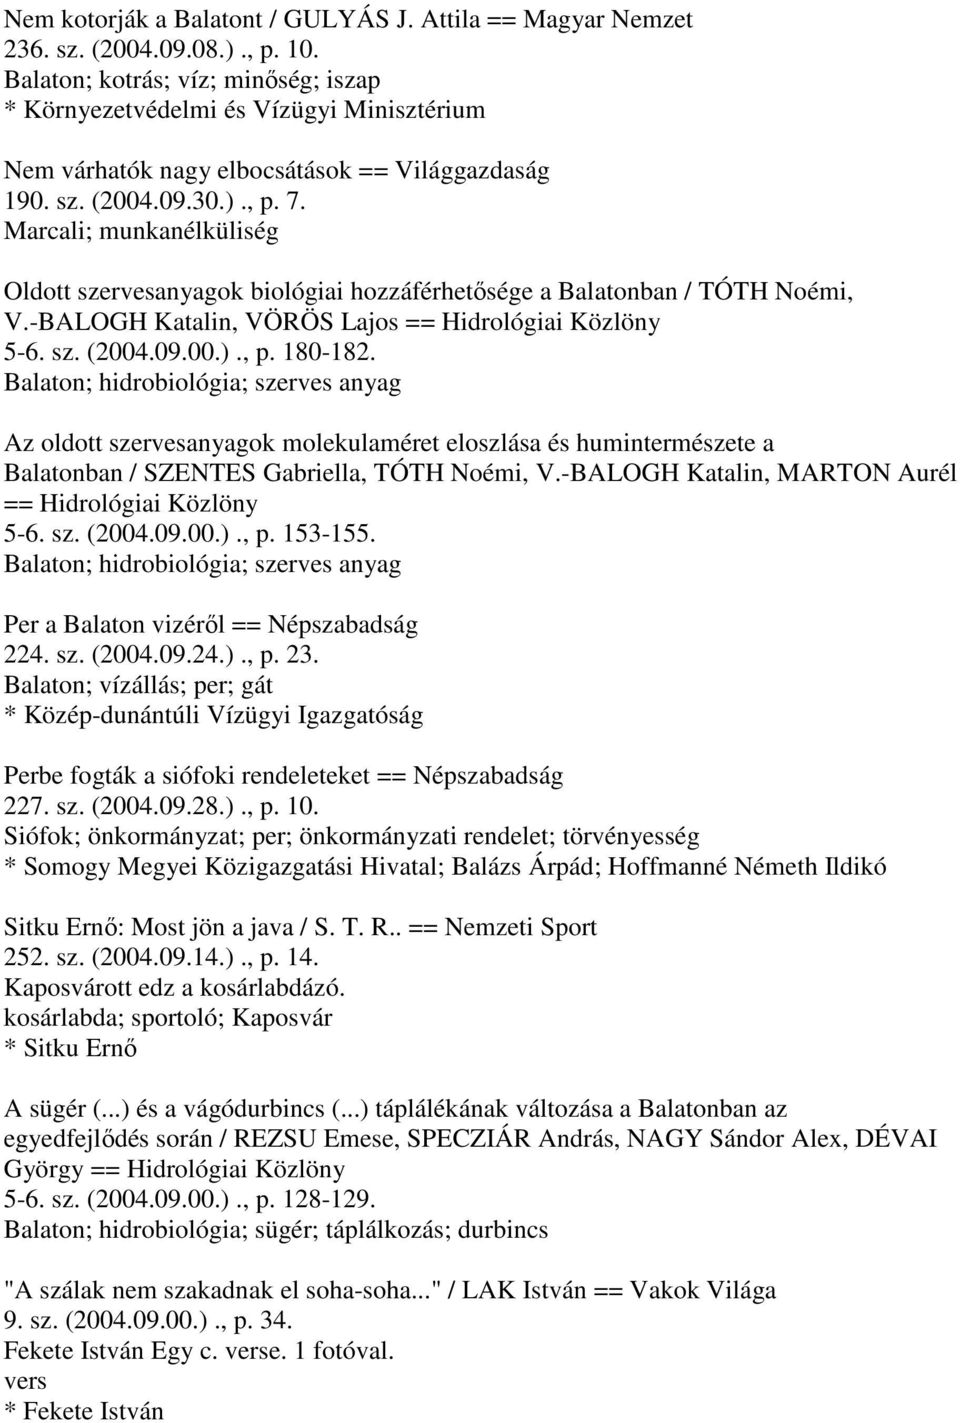 hozzáférhetősége a Balatonban / TÓTH Noémi, V.-BALOGH Katalin, VÖRÖS Lajos == Hidrológiai Közlöny 5-6. sz. (2004.09.00.)., p. 180-182.